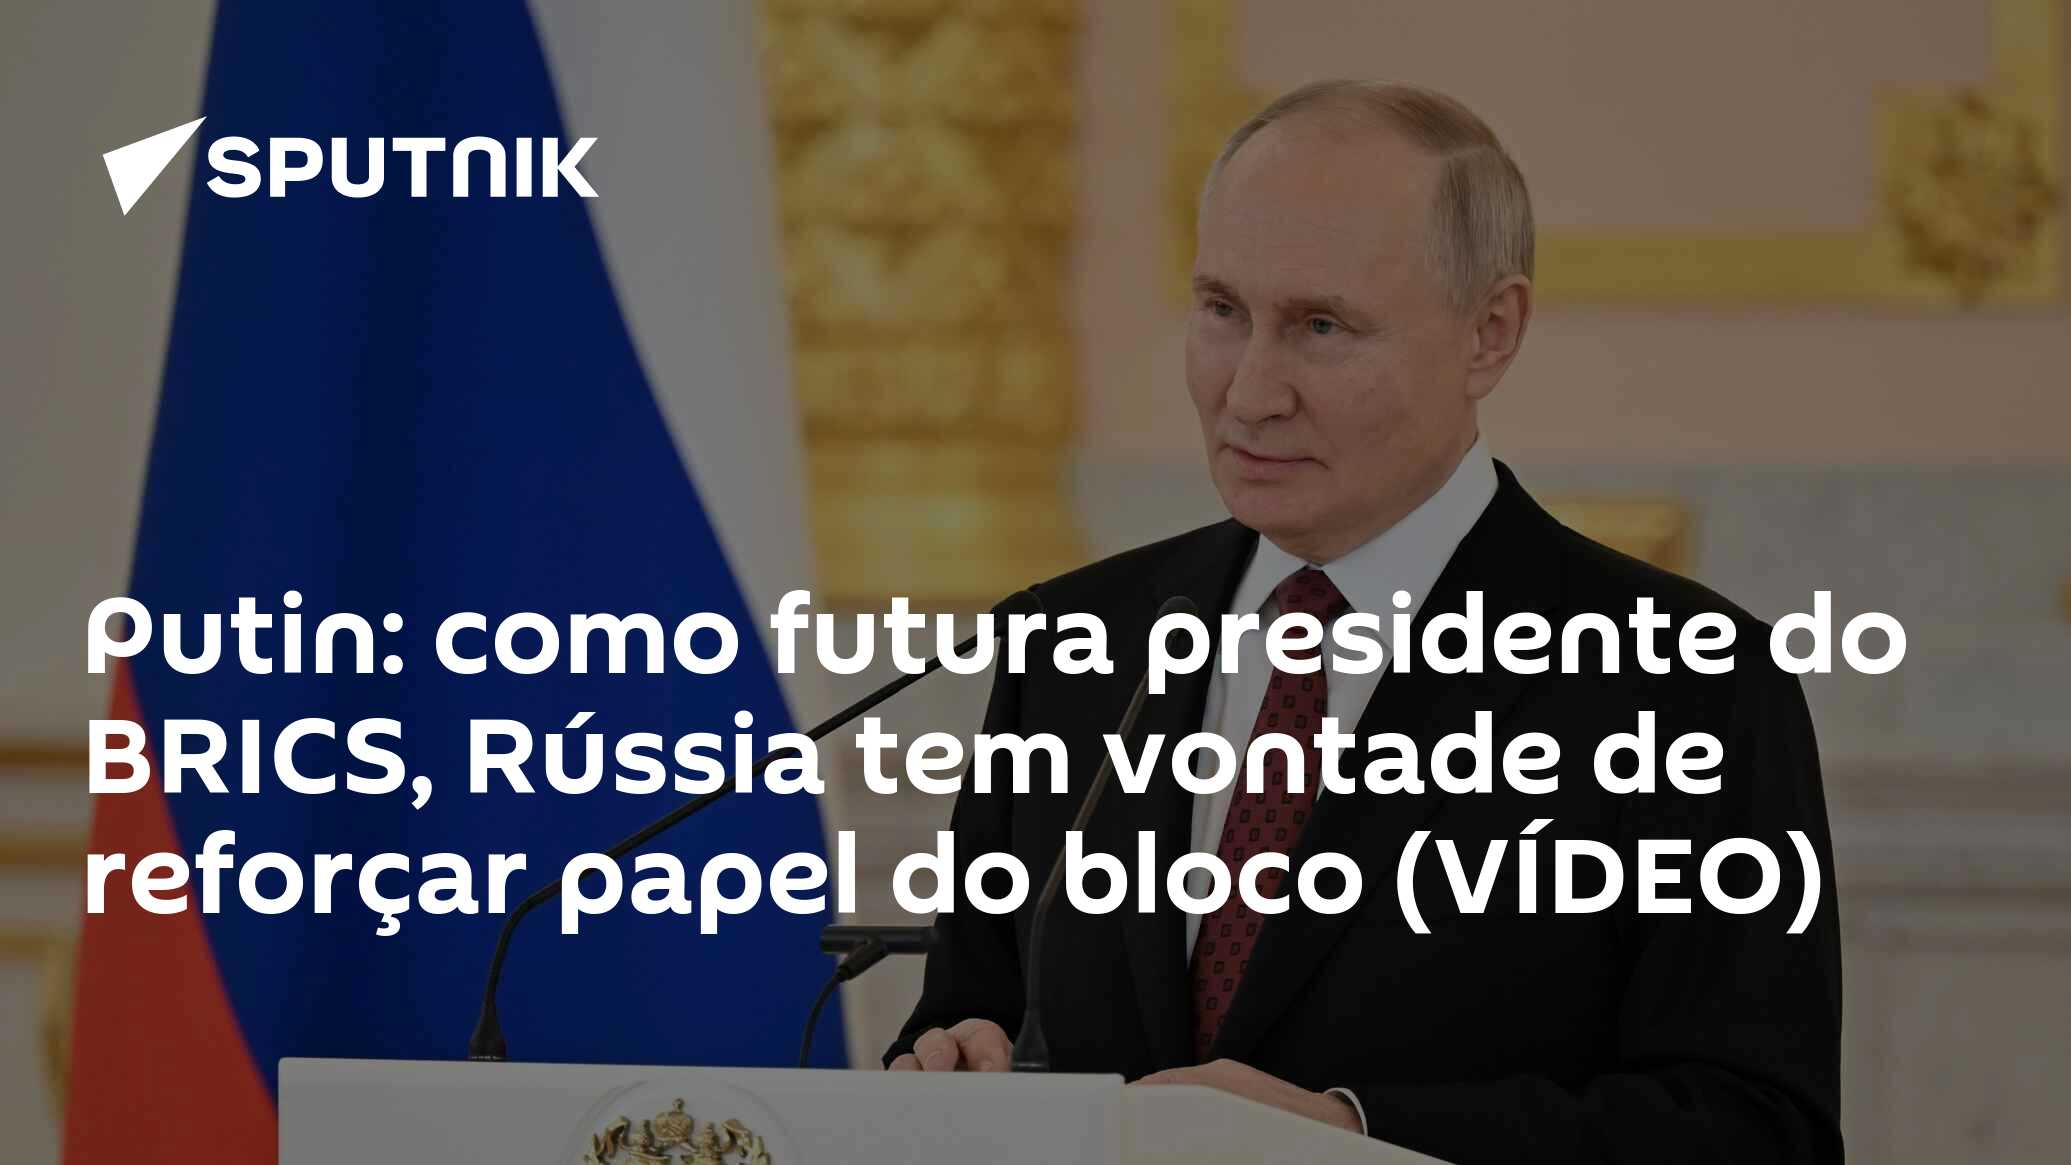 Ministro Dias à Sputnik: Brasil, BRICS e União Africana juntos na guerra  contra a fome (VÍDEO) - 21.02.2024, Sputnik Brasil